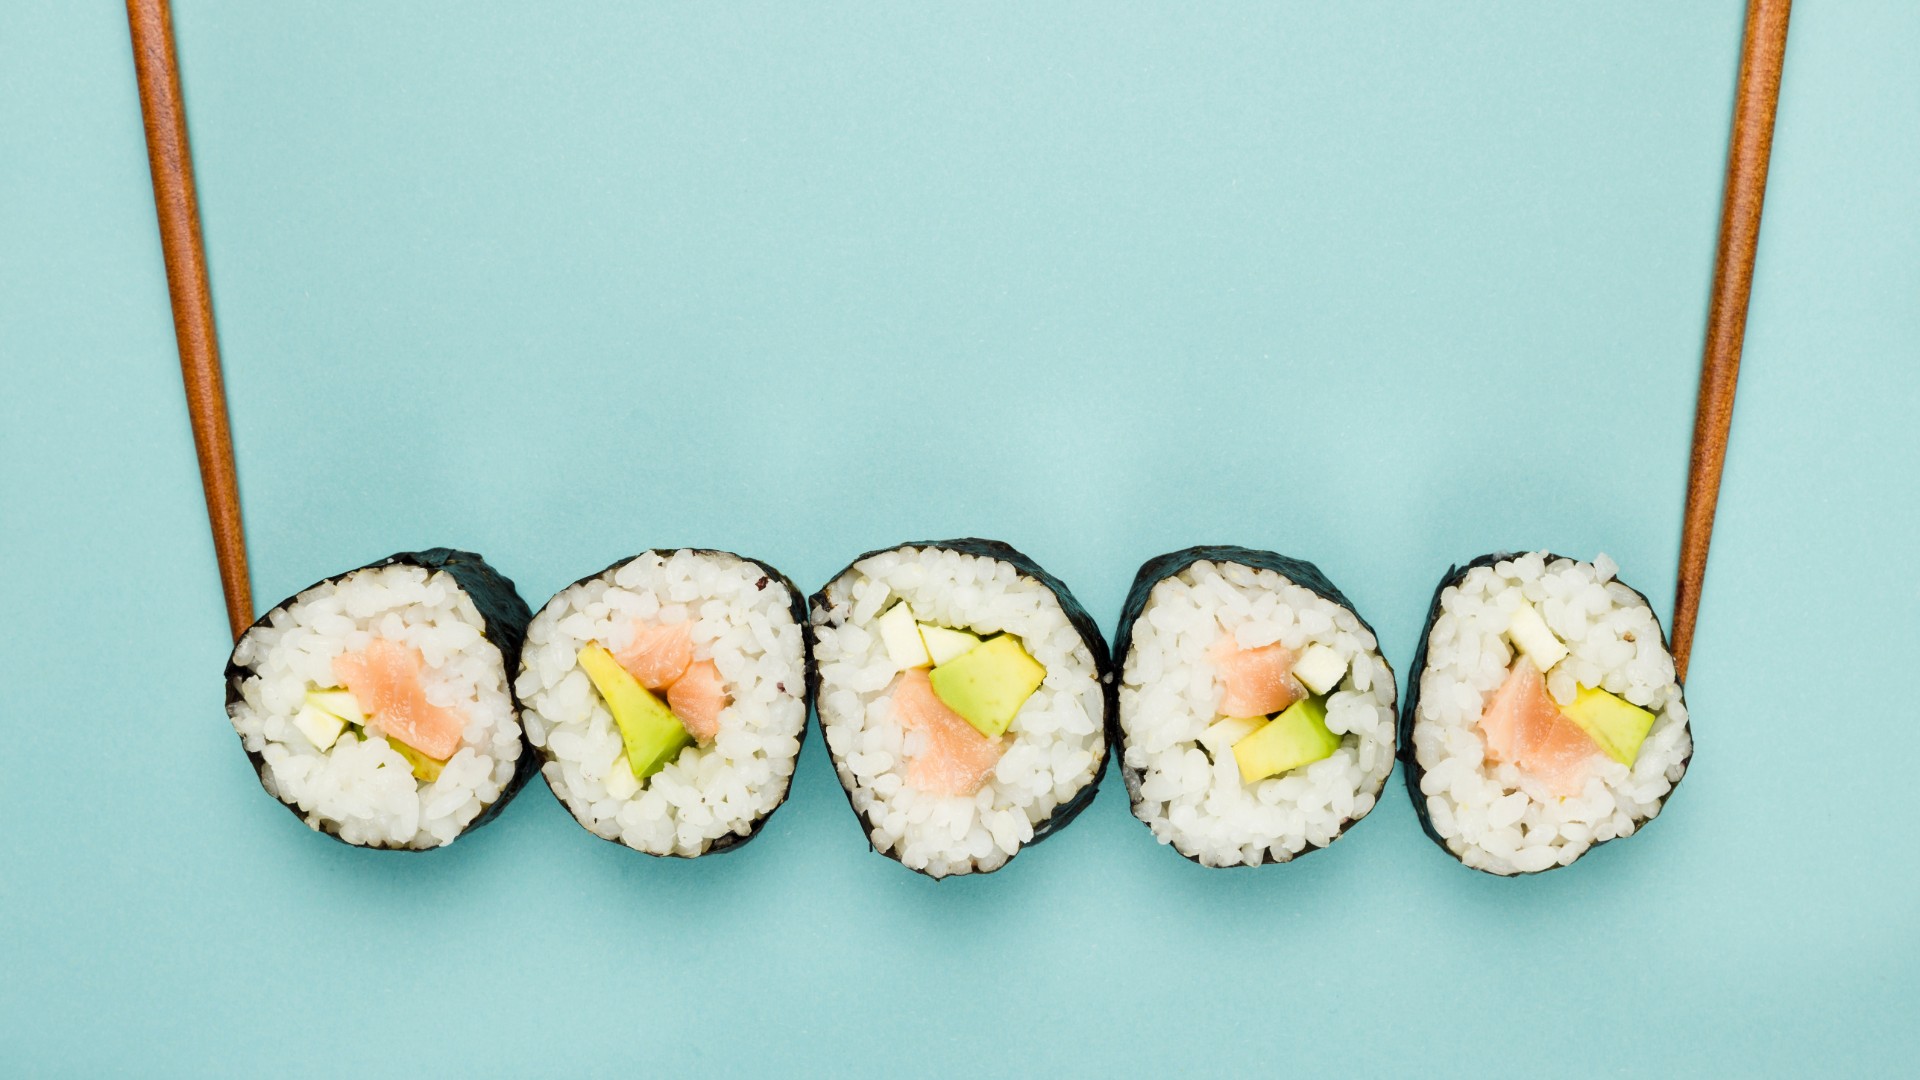 Foto de capa do artigo "Grávida pode comer sushi? Veja quais peixes é preciso evitar"